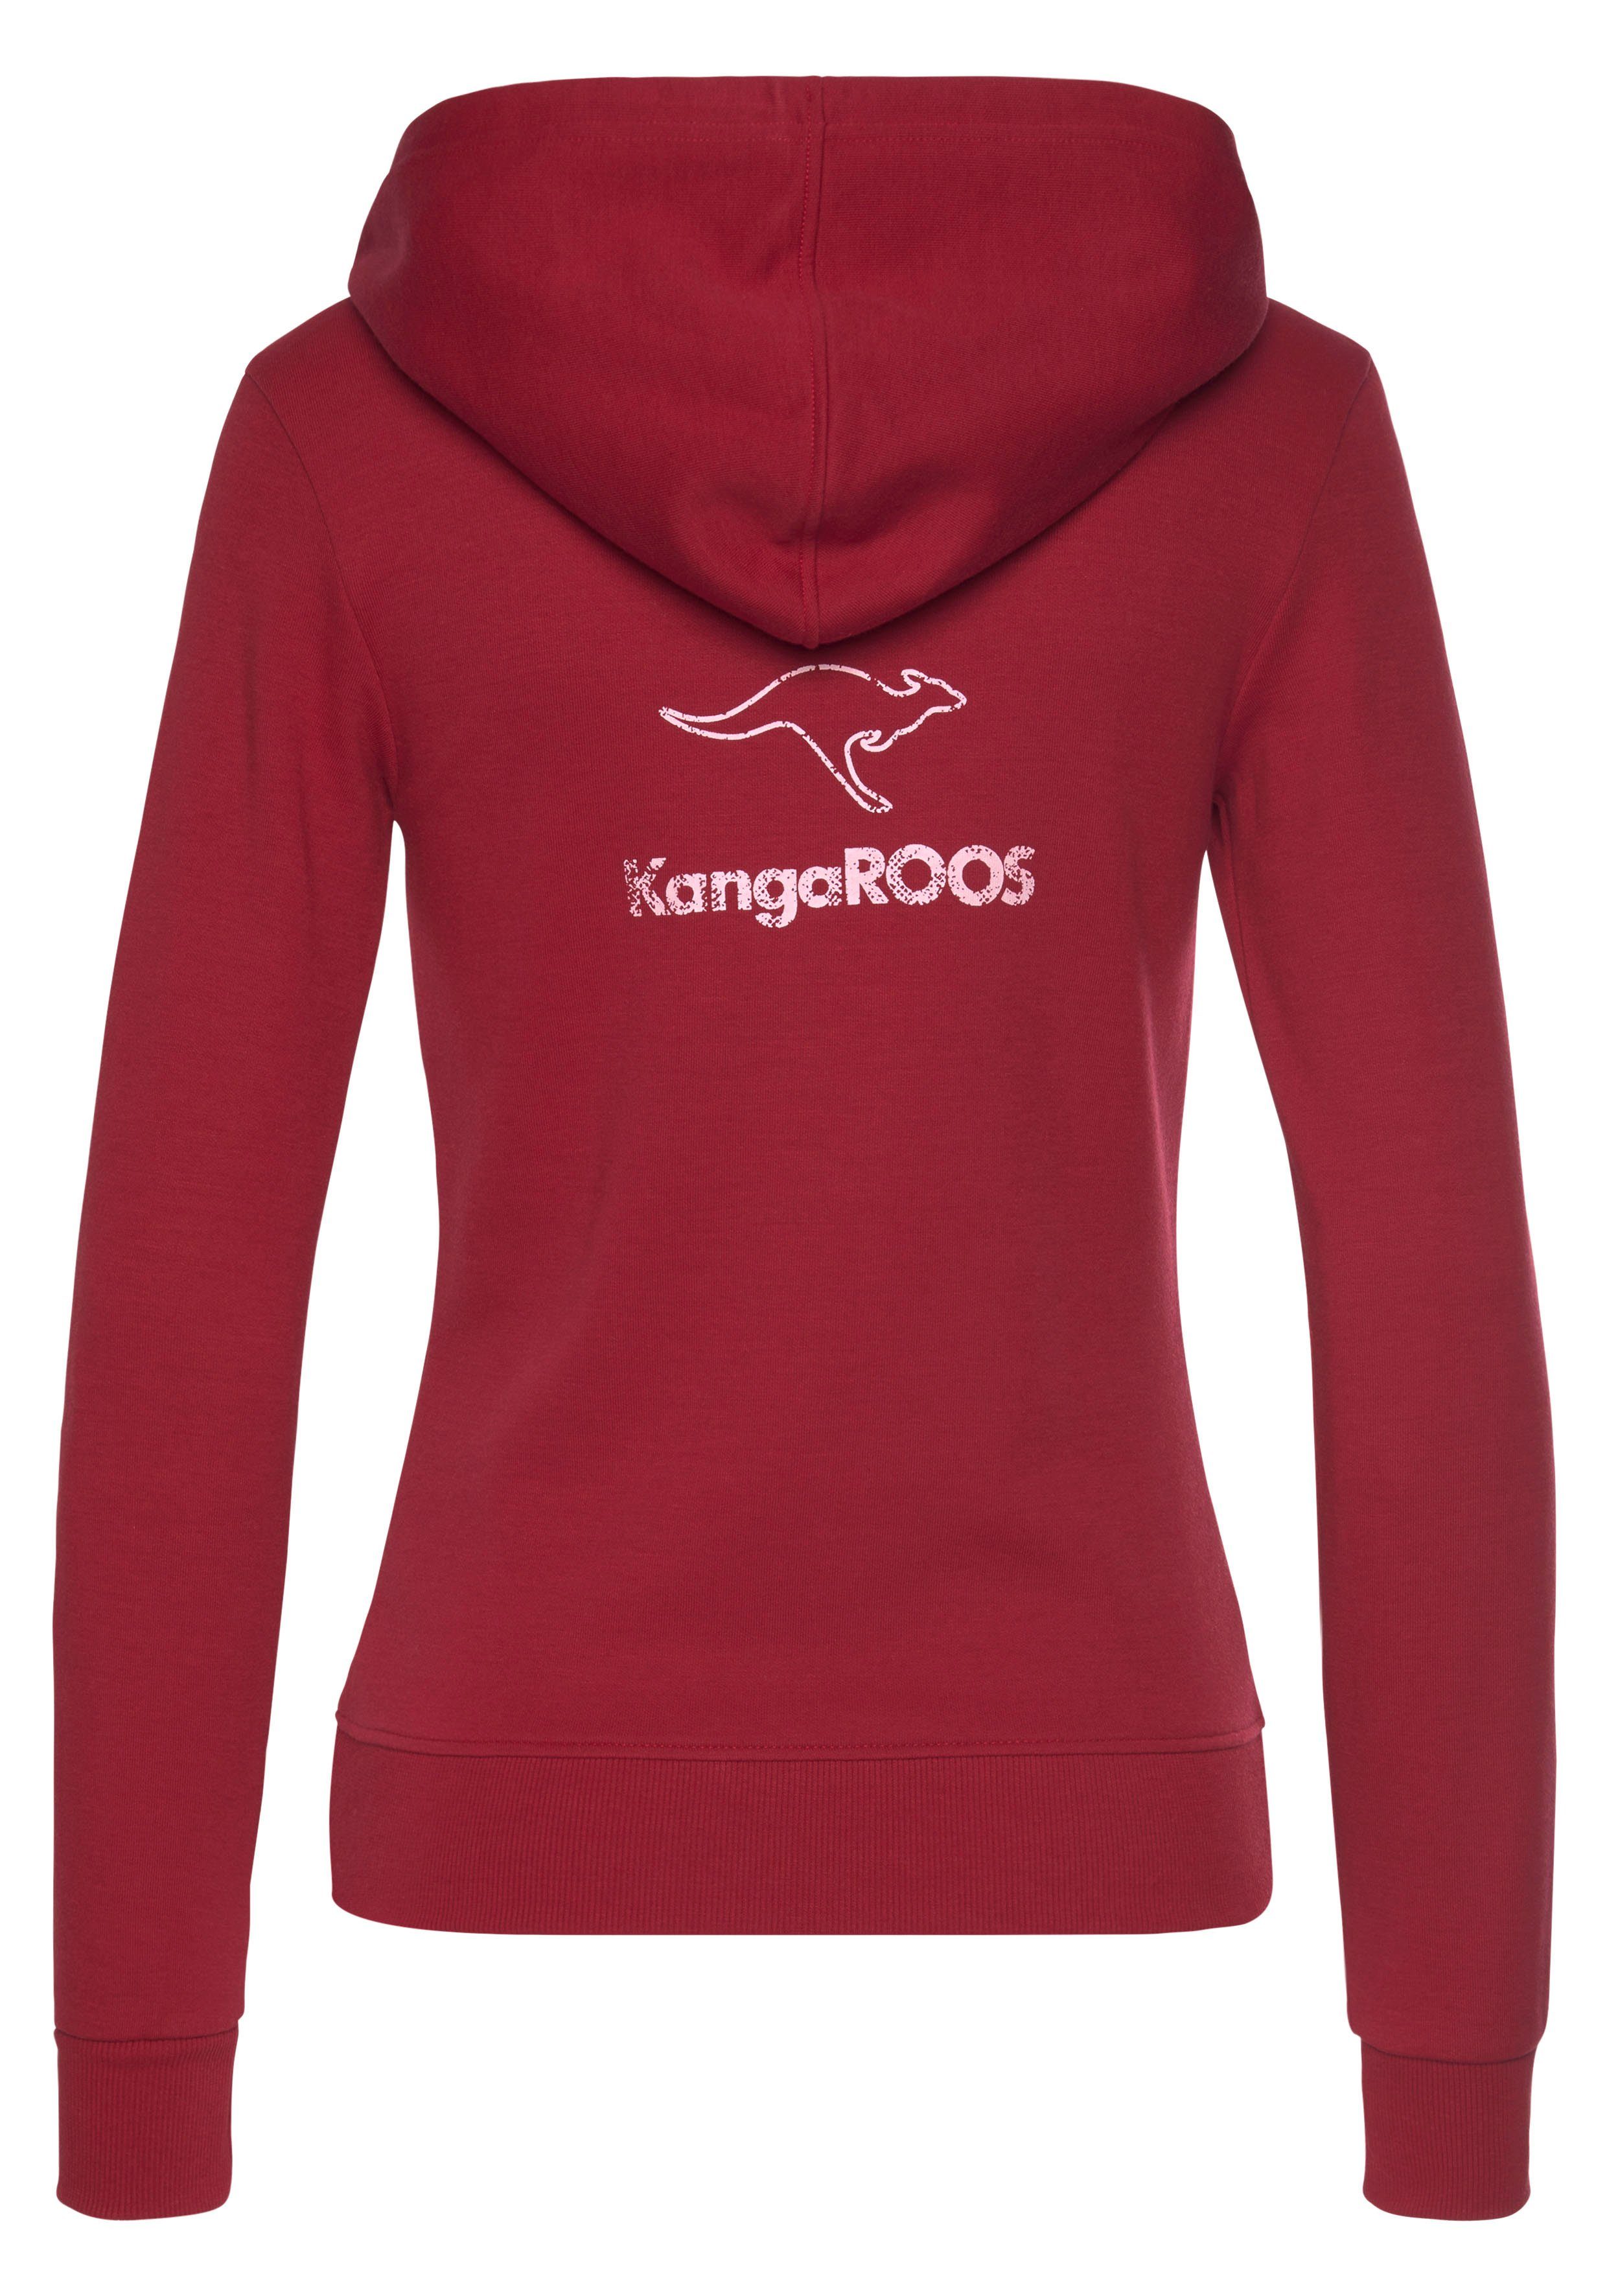 KangaROOS Sweatjacke mit großem dem Loungeanzug Logodruck auf rot Rücken